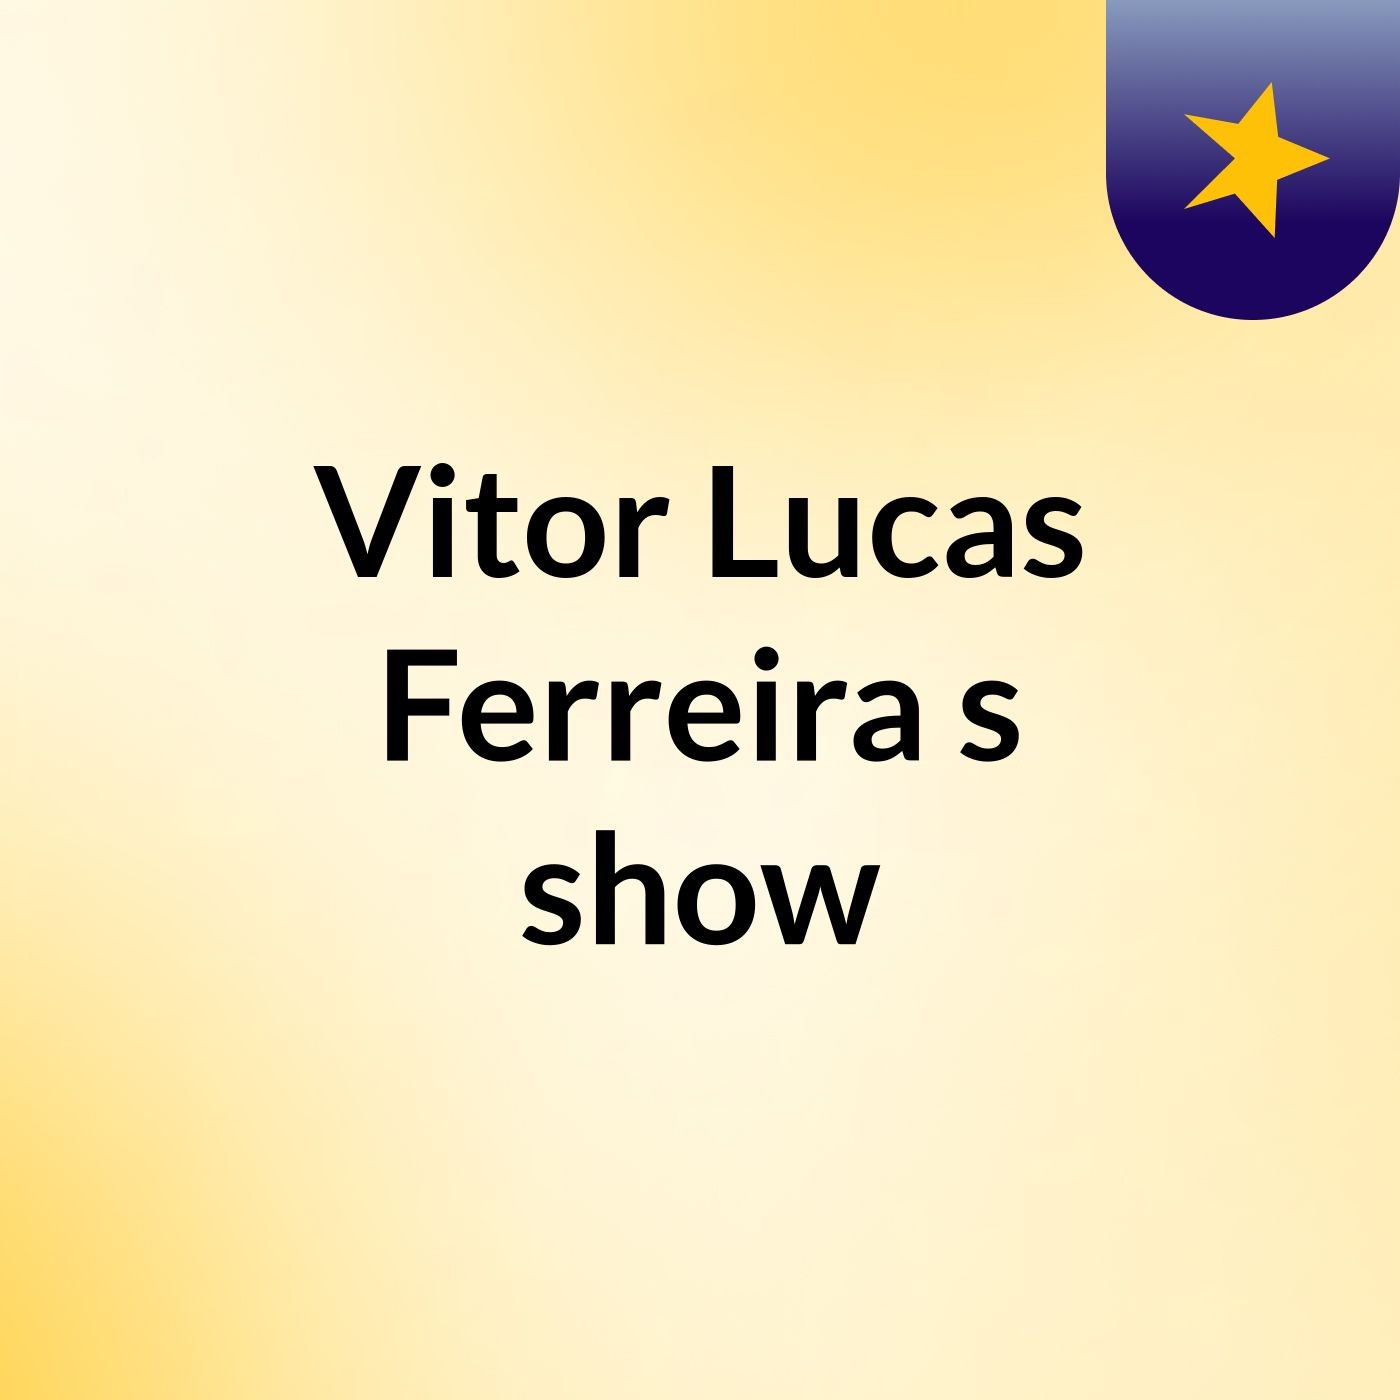 Vitor Lucas Ferreira's show